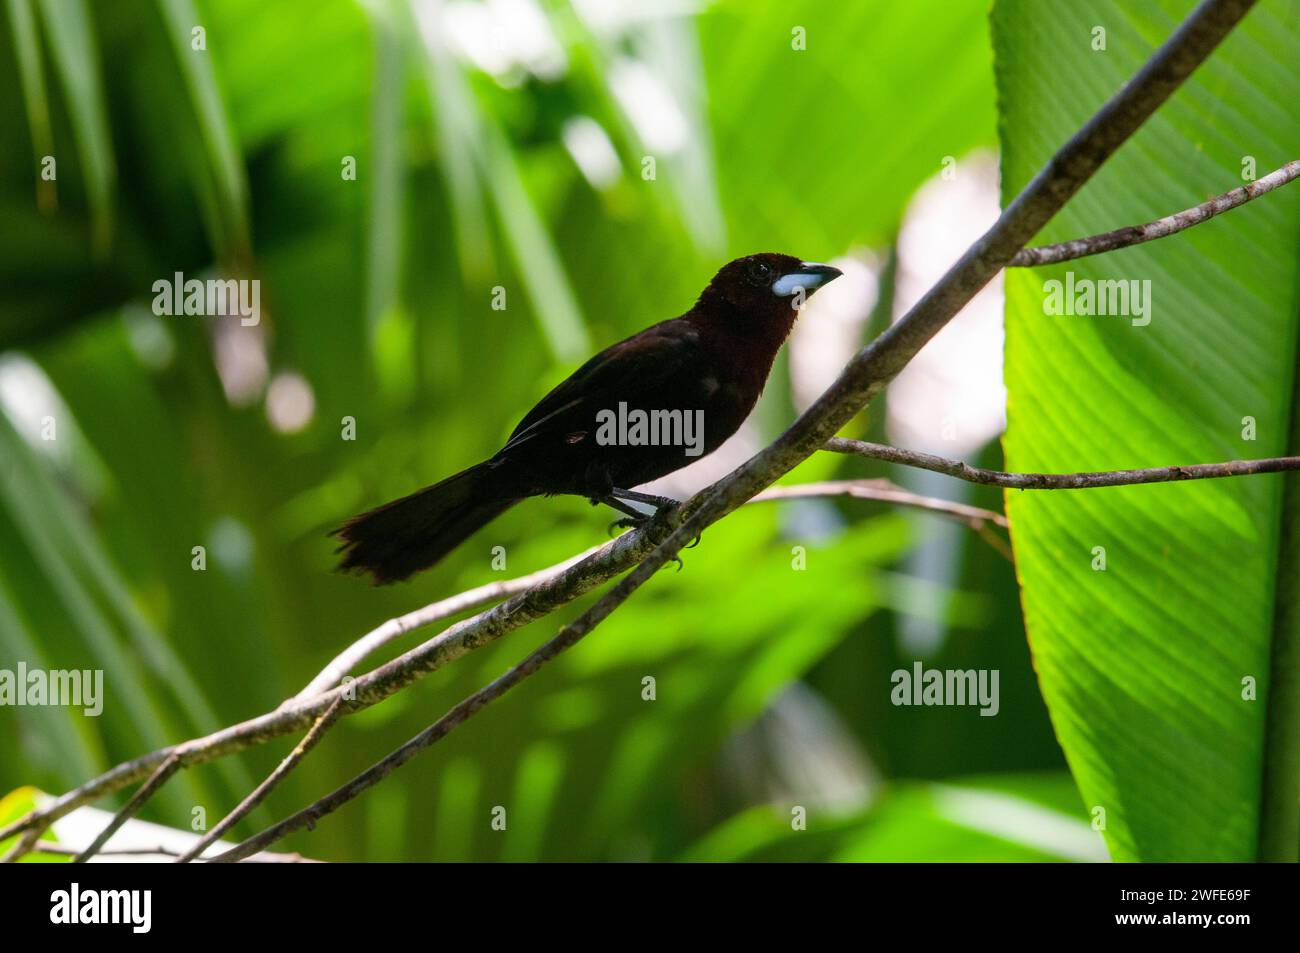 Il cacique solitario o cacique nero solitario (Cacicus solitarius) è una specie di uccello della famiglia Icteridae. Si trova in Argentina, Bolivia, Foto Stock